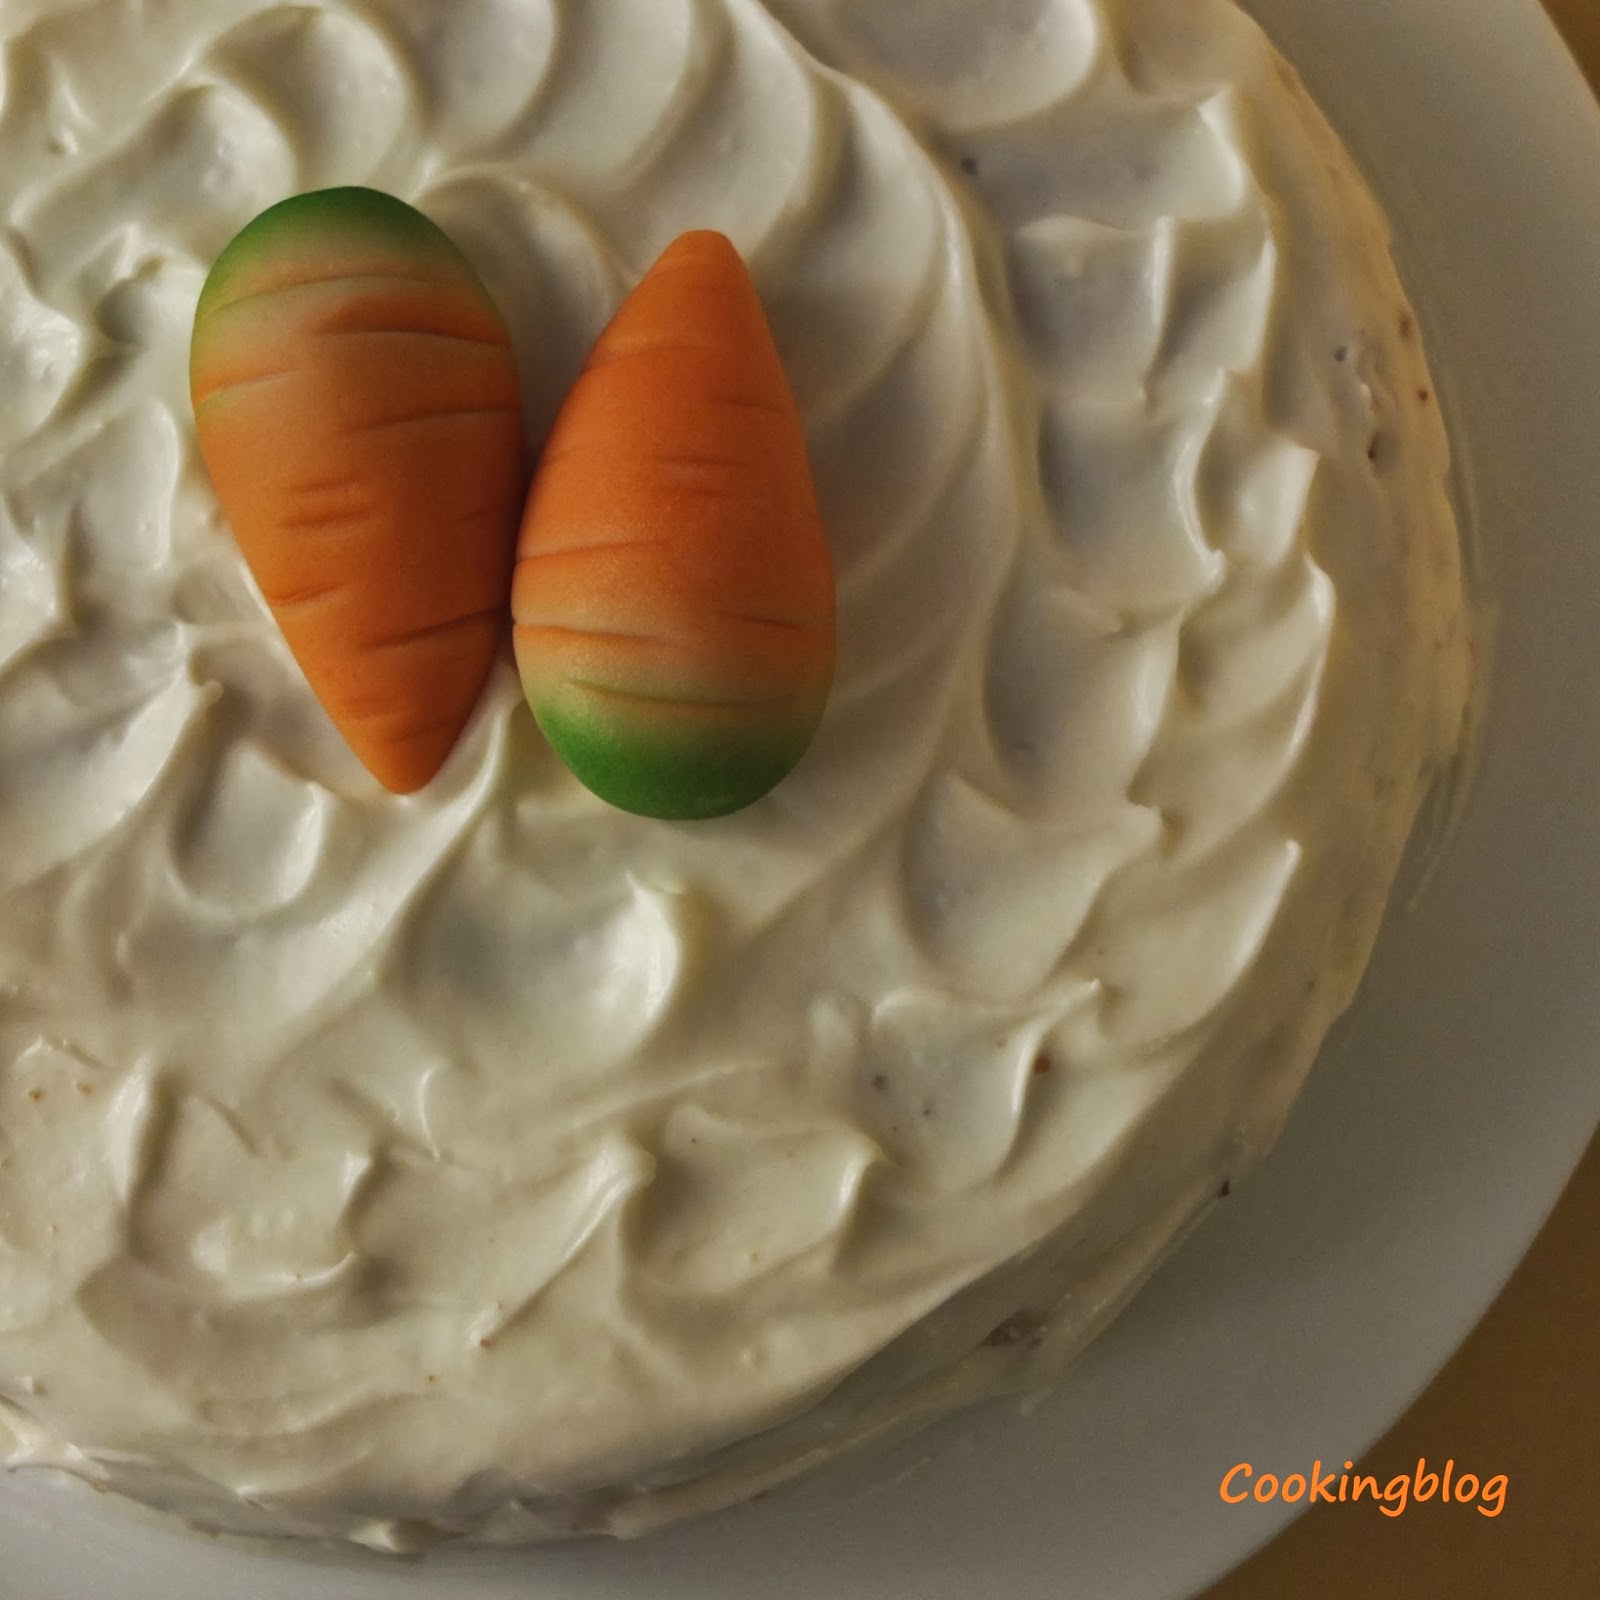 Bolo de cenoura | Carrot cake